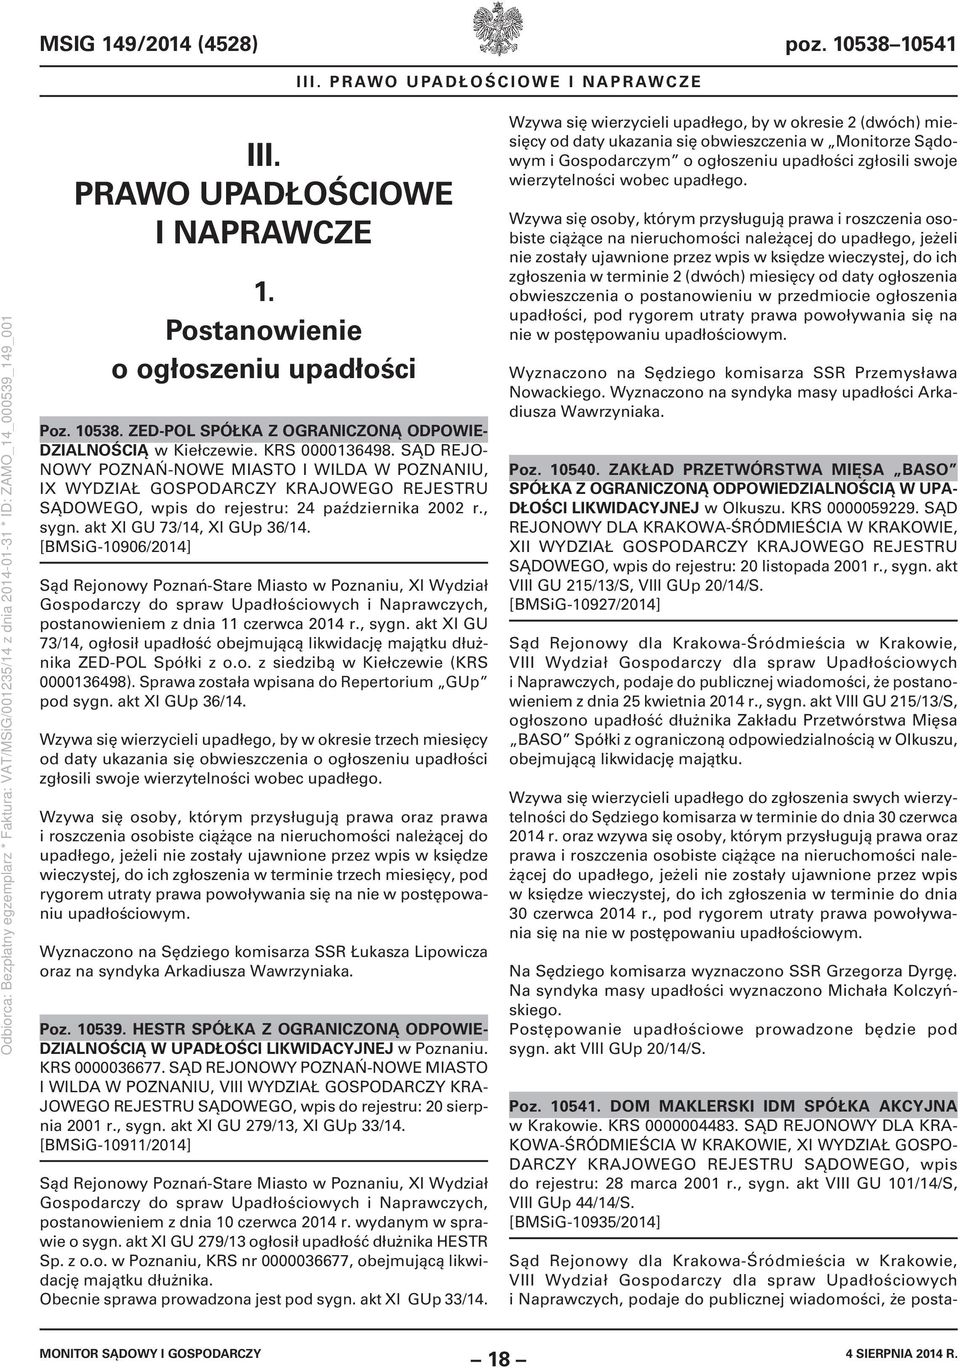 [BMSiG-10906/2014] postanowieniem z dnia 11 czerwca 2014 r., sygn. akt XI GU 73/14, ogłosił upadłość obejmującą likwidację majątku dłużnika ZED-POL Spółki z o.o. z siedzibą w Kiełczewie (KRS 0000136498).